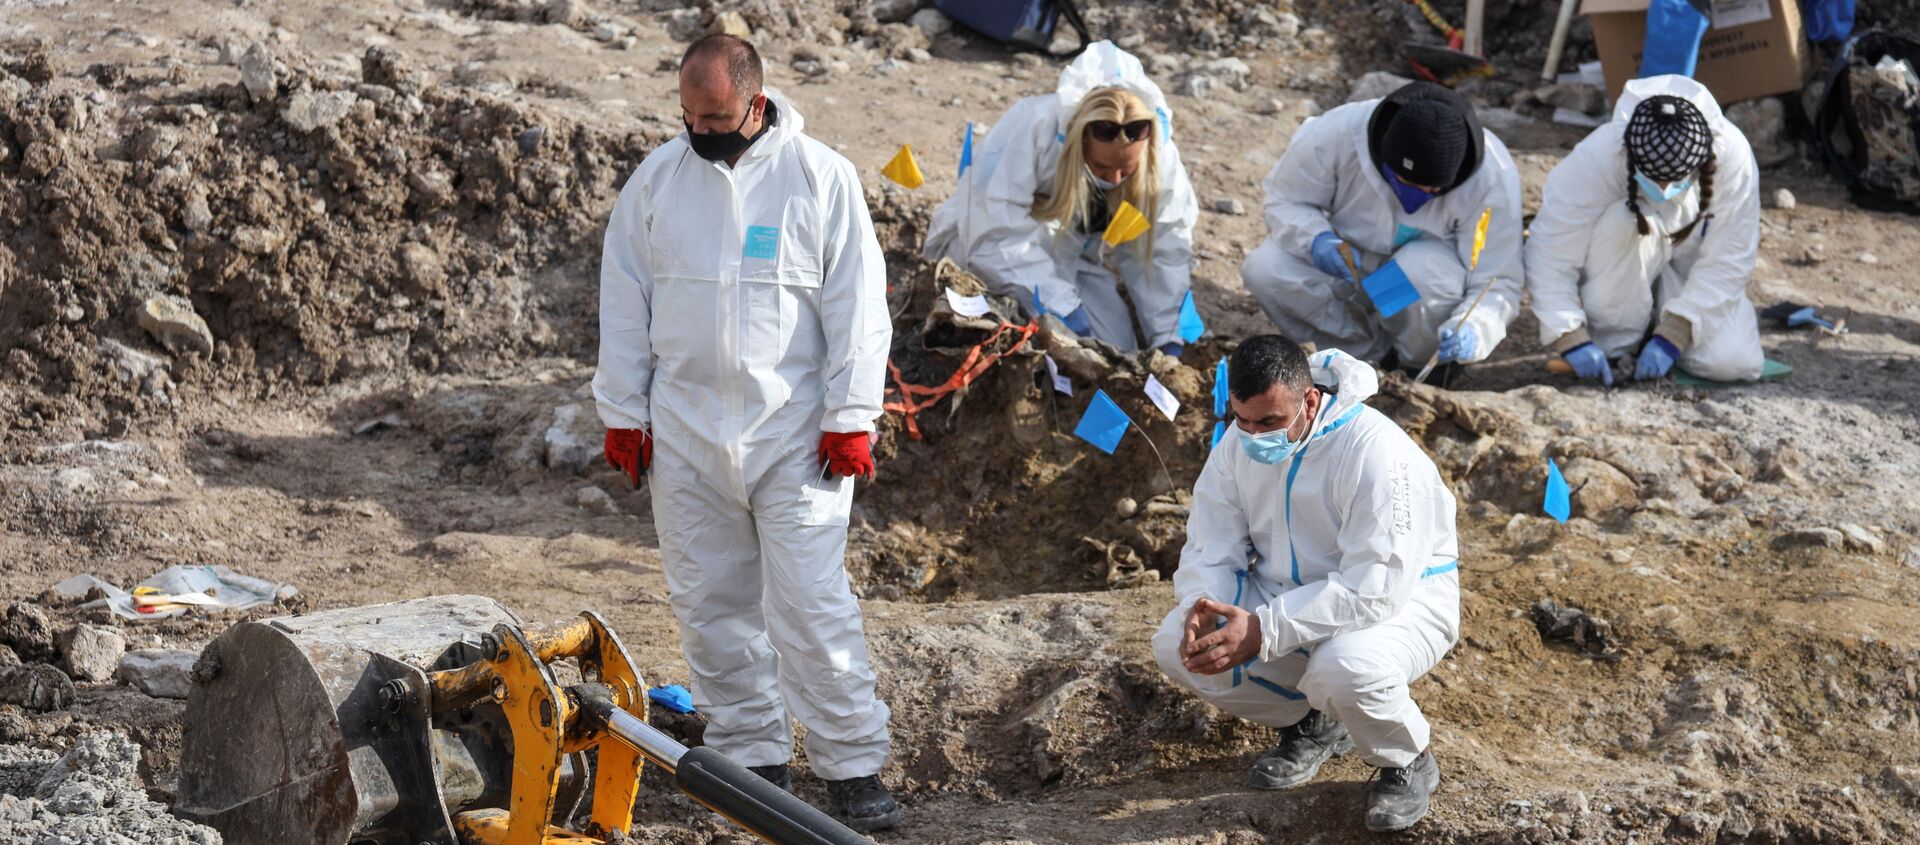 Los investigadores forenses buscan restos de más de una docena de albanokosovares asesinados durante la guerra de Kosovo - Sputnik Mundo, 1920, 05.12.2020